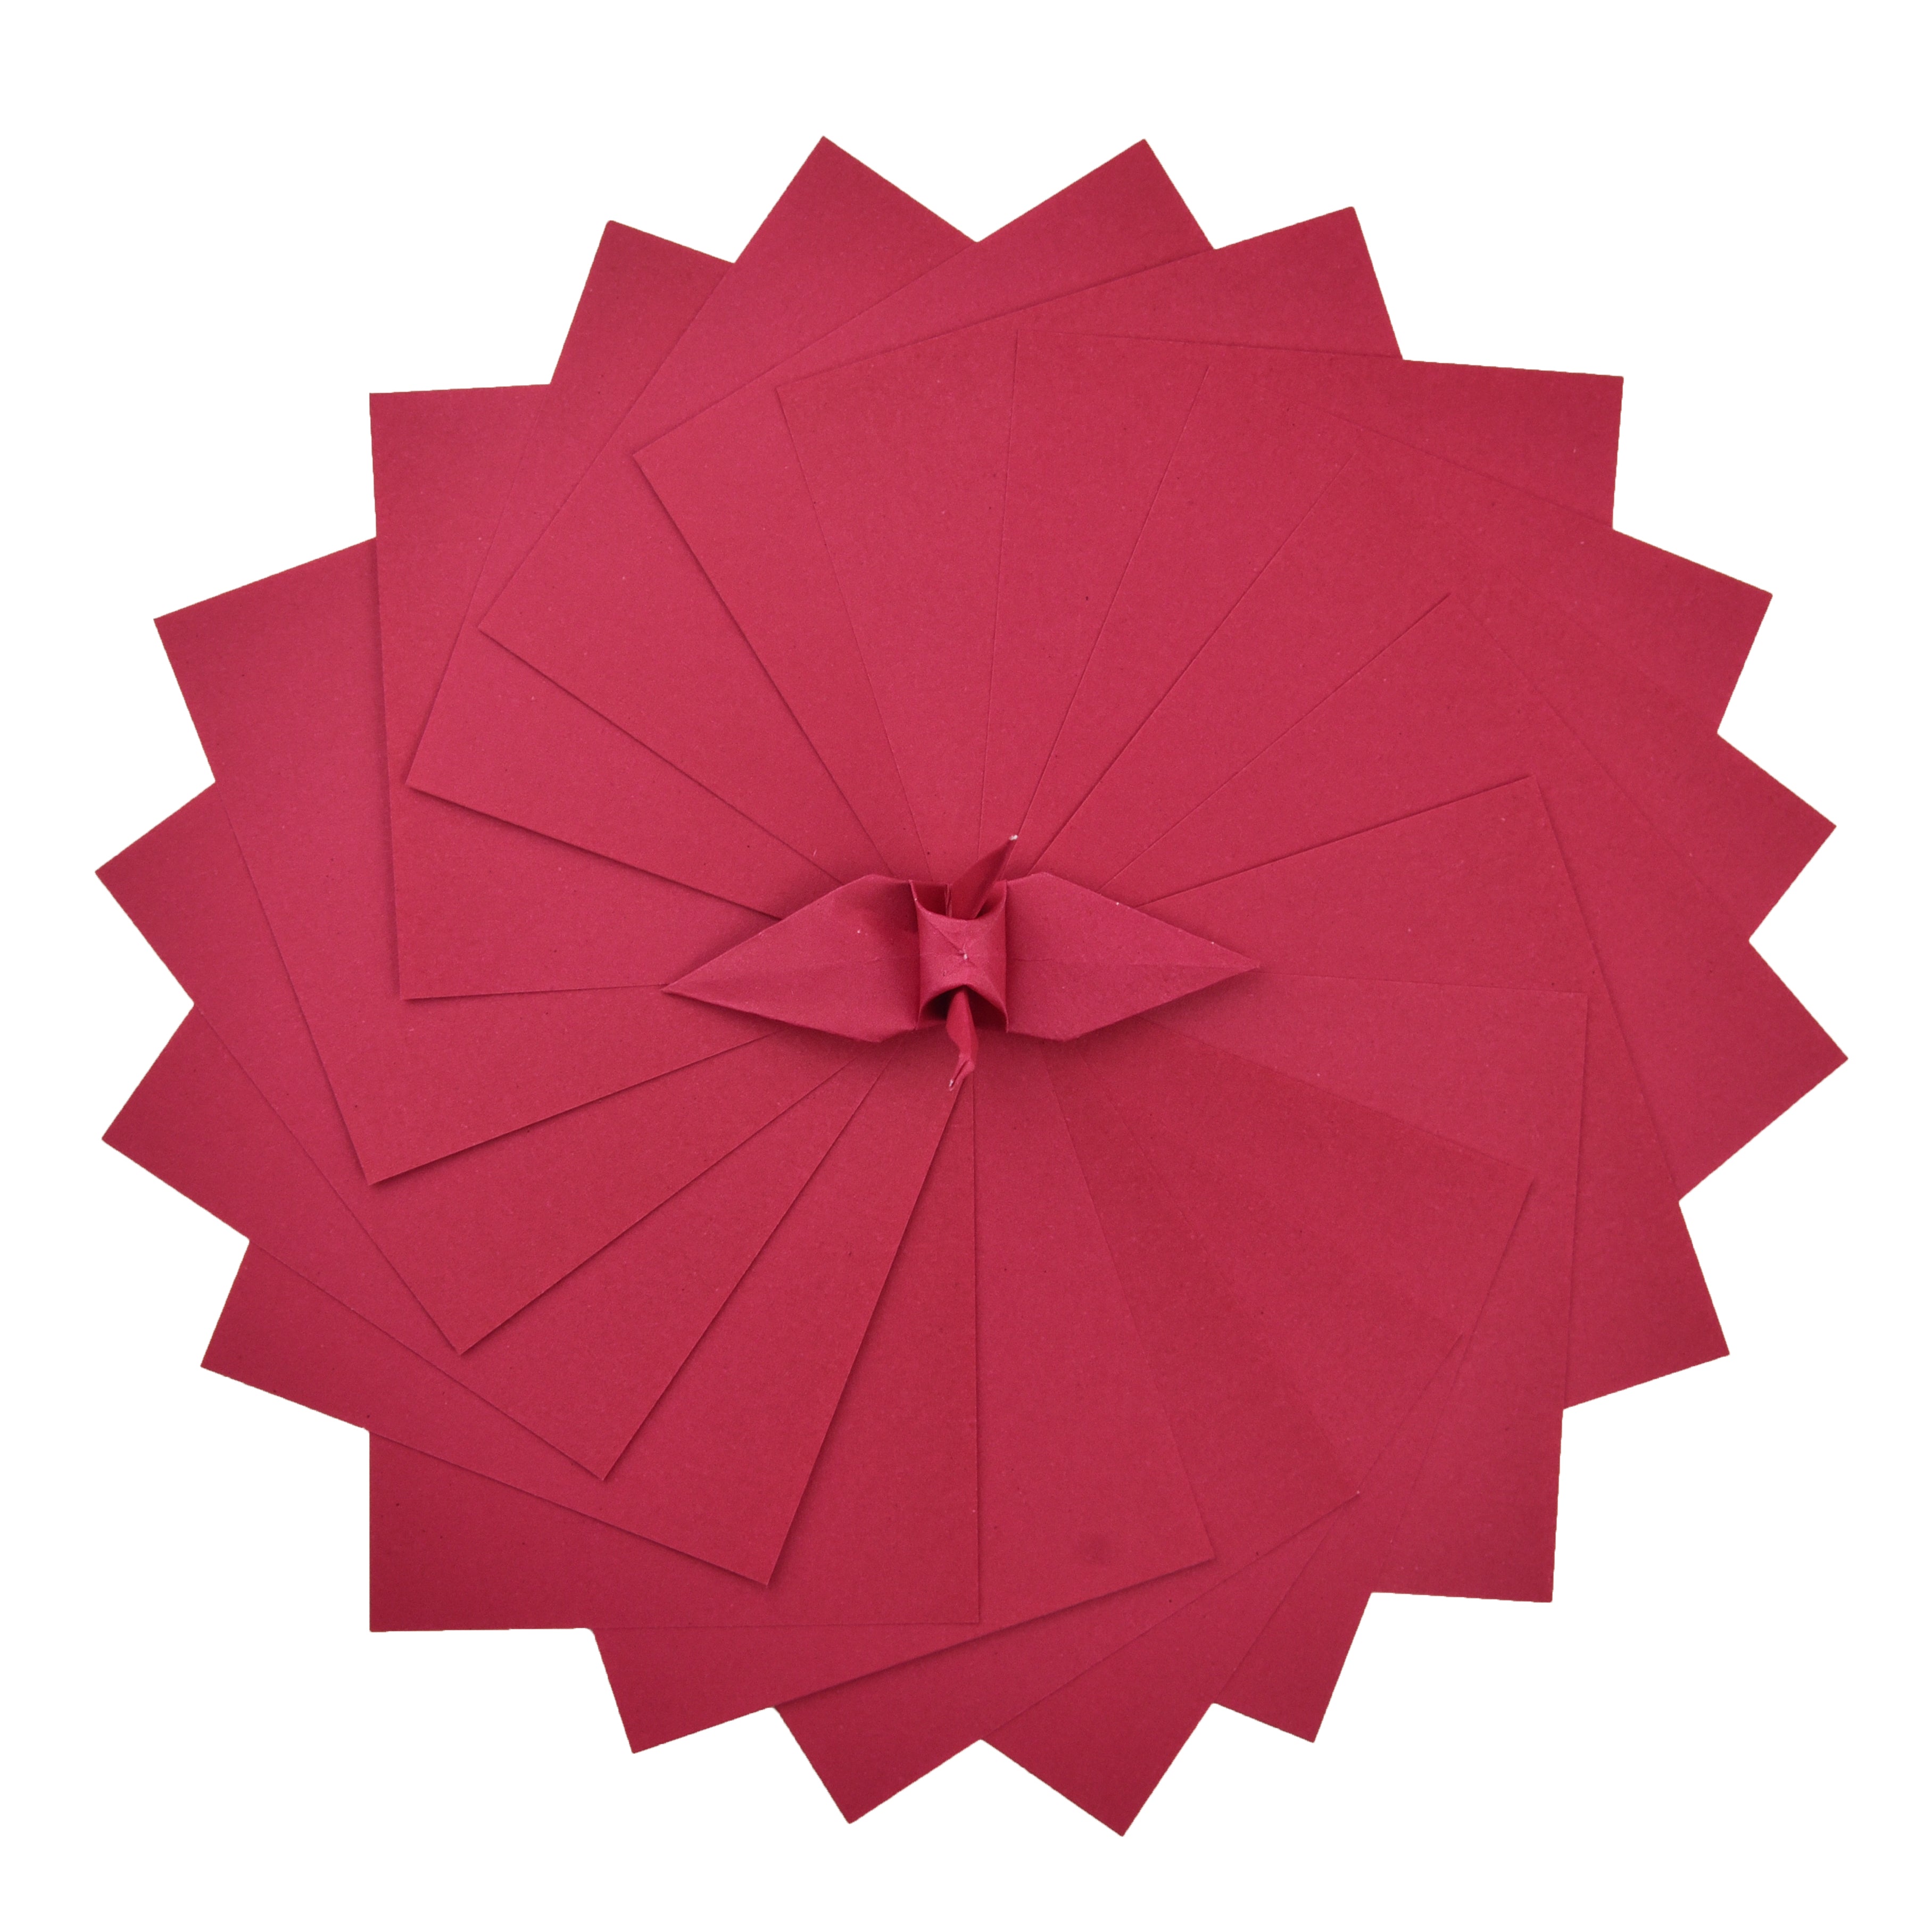 100 Hojas de Papel Origami - 3x3 pulgadas - Paquete de Papel Cuadrado para Plegar, Grullas de Origami y Decoración - S15